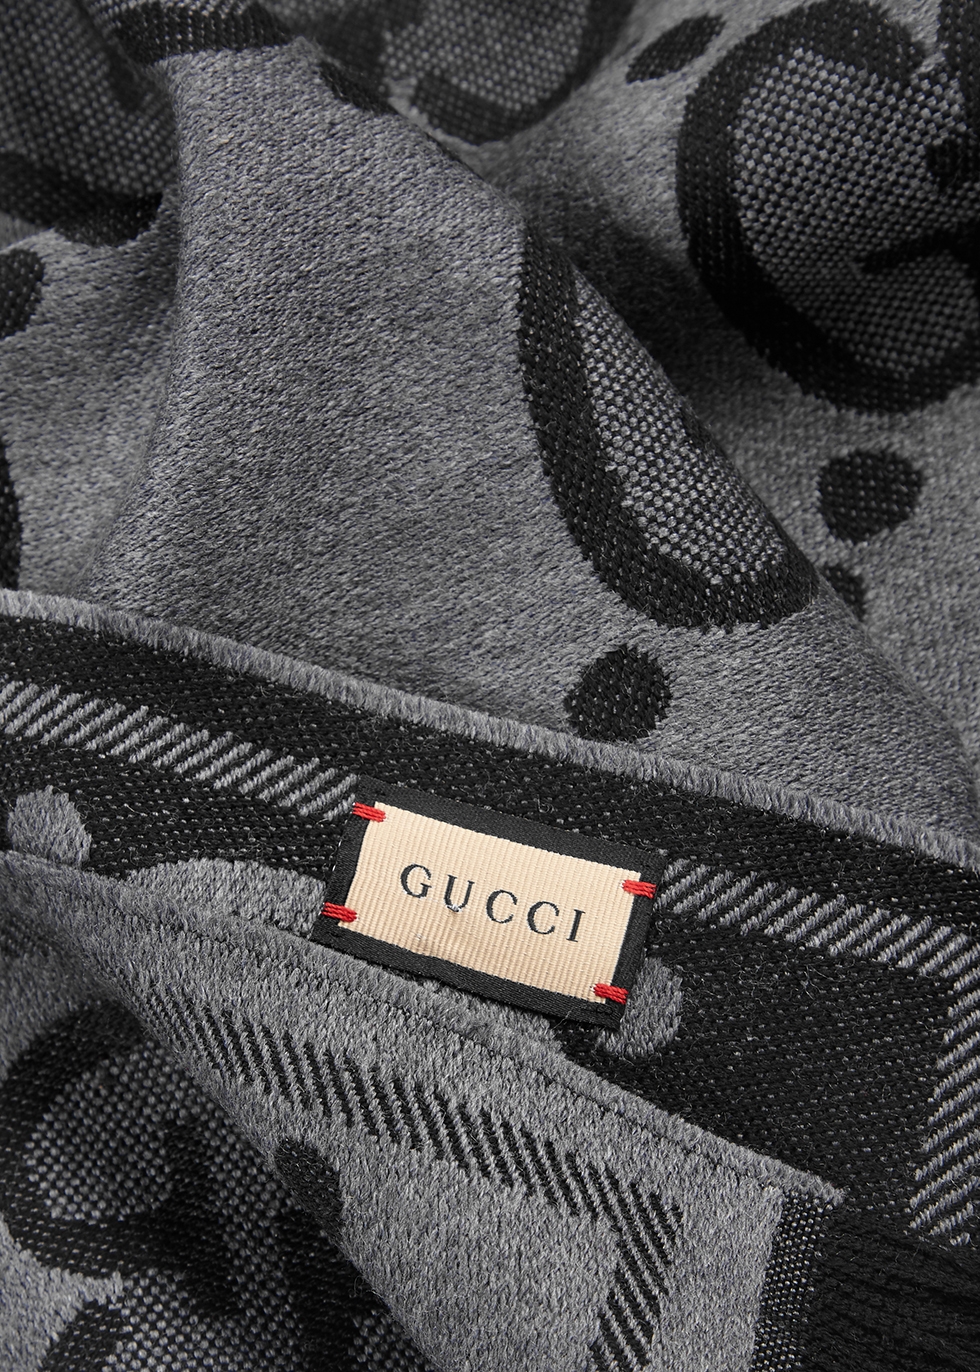 gucci scarf label